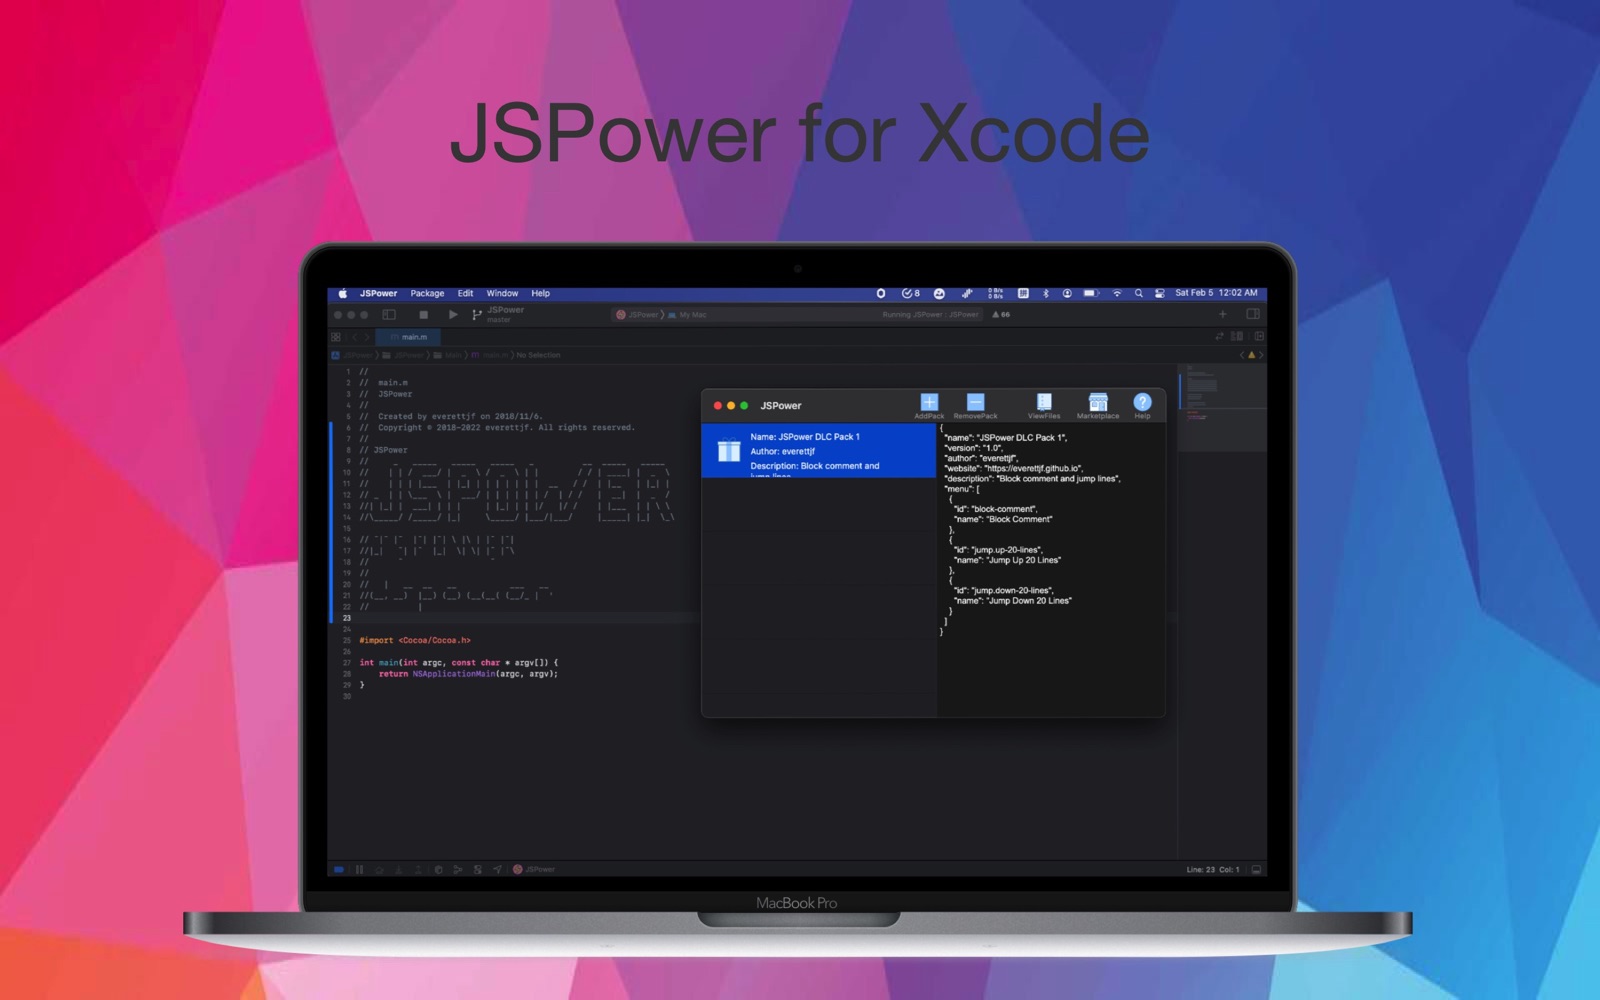 JSPower 3.0 : Main Window